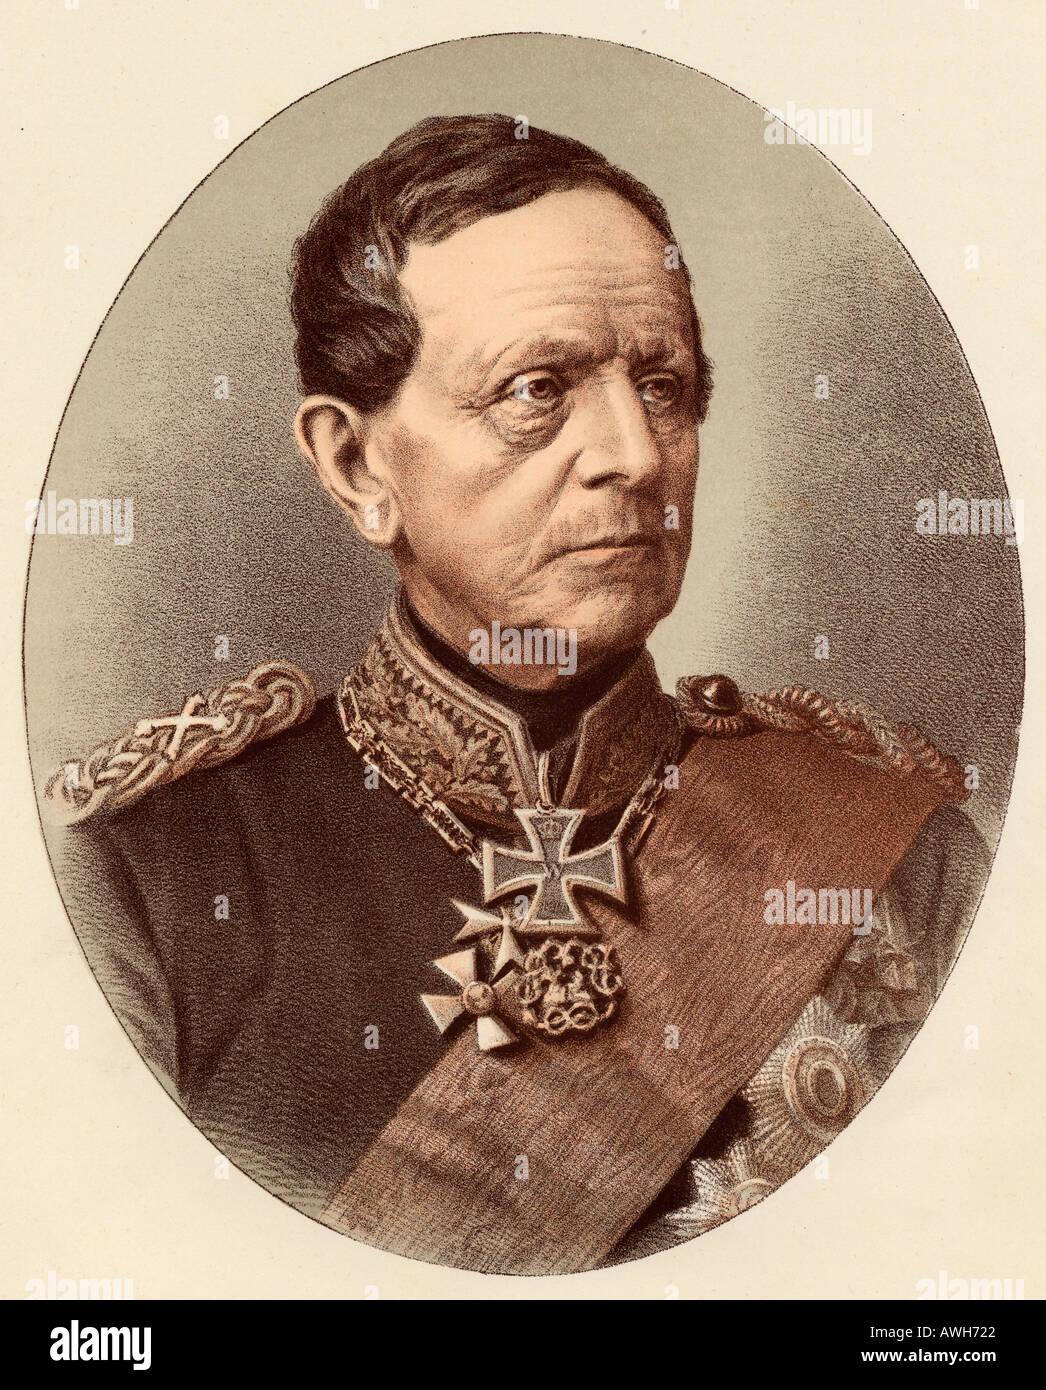 Helmuth Karl Bernhard Graf von Moltke, 1800 - 1891. Preußische Feldmarschall. Stockfoto